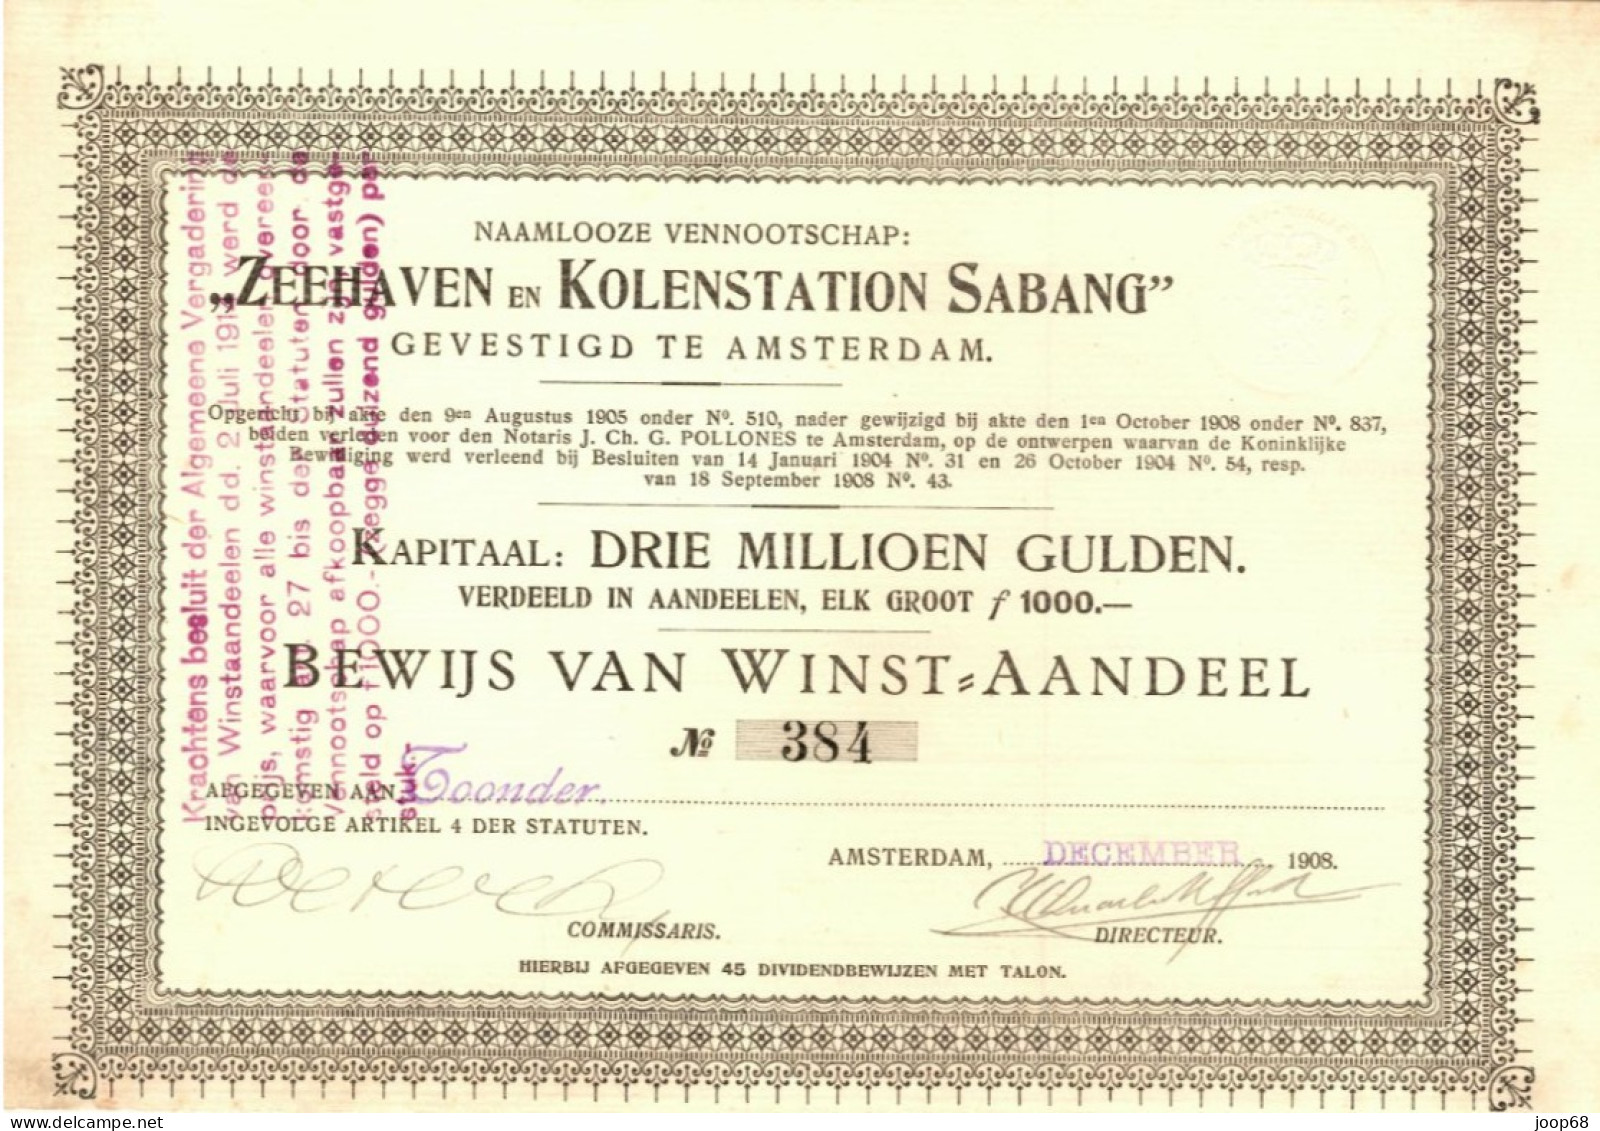 Zeehaven En Kolenstation SABANG, Bewijs Van Winst-Aandeel, Amsterdam, December 1908 Indonesia - Mines